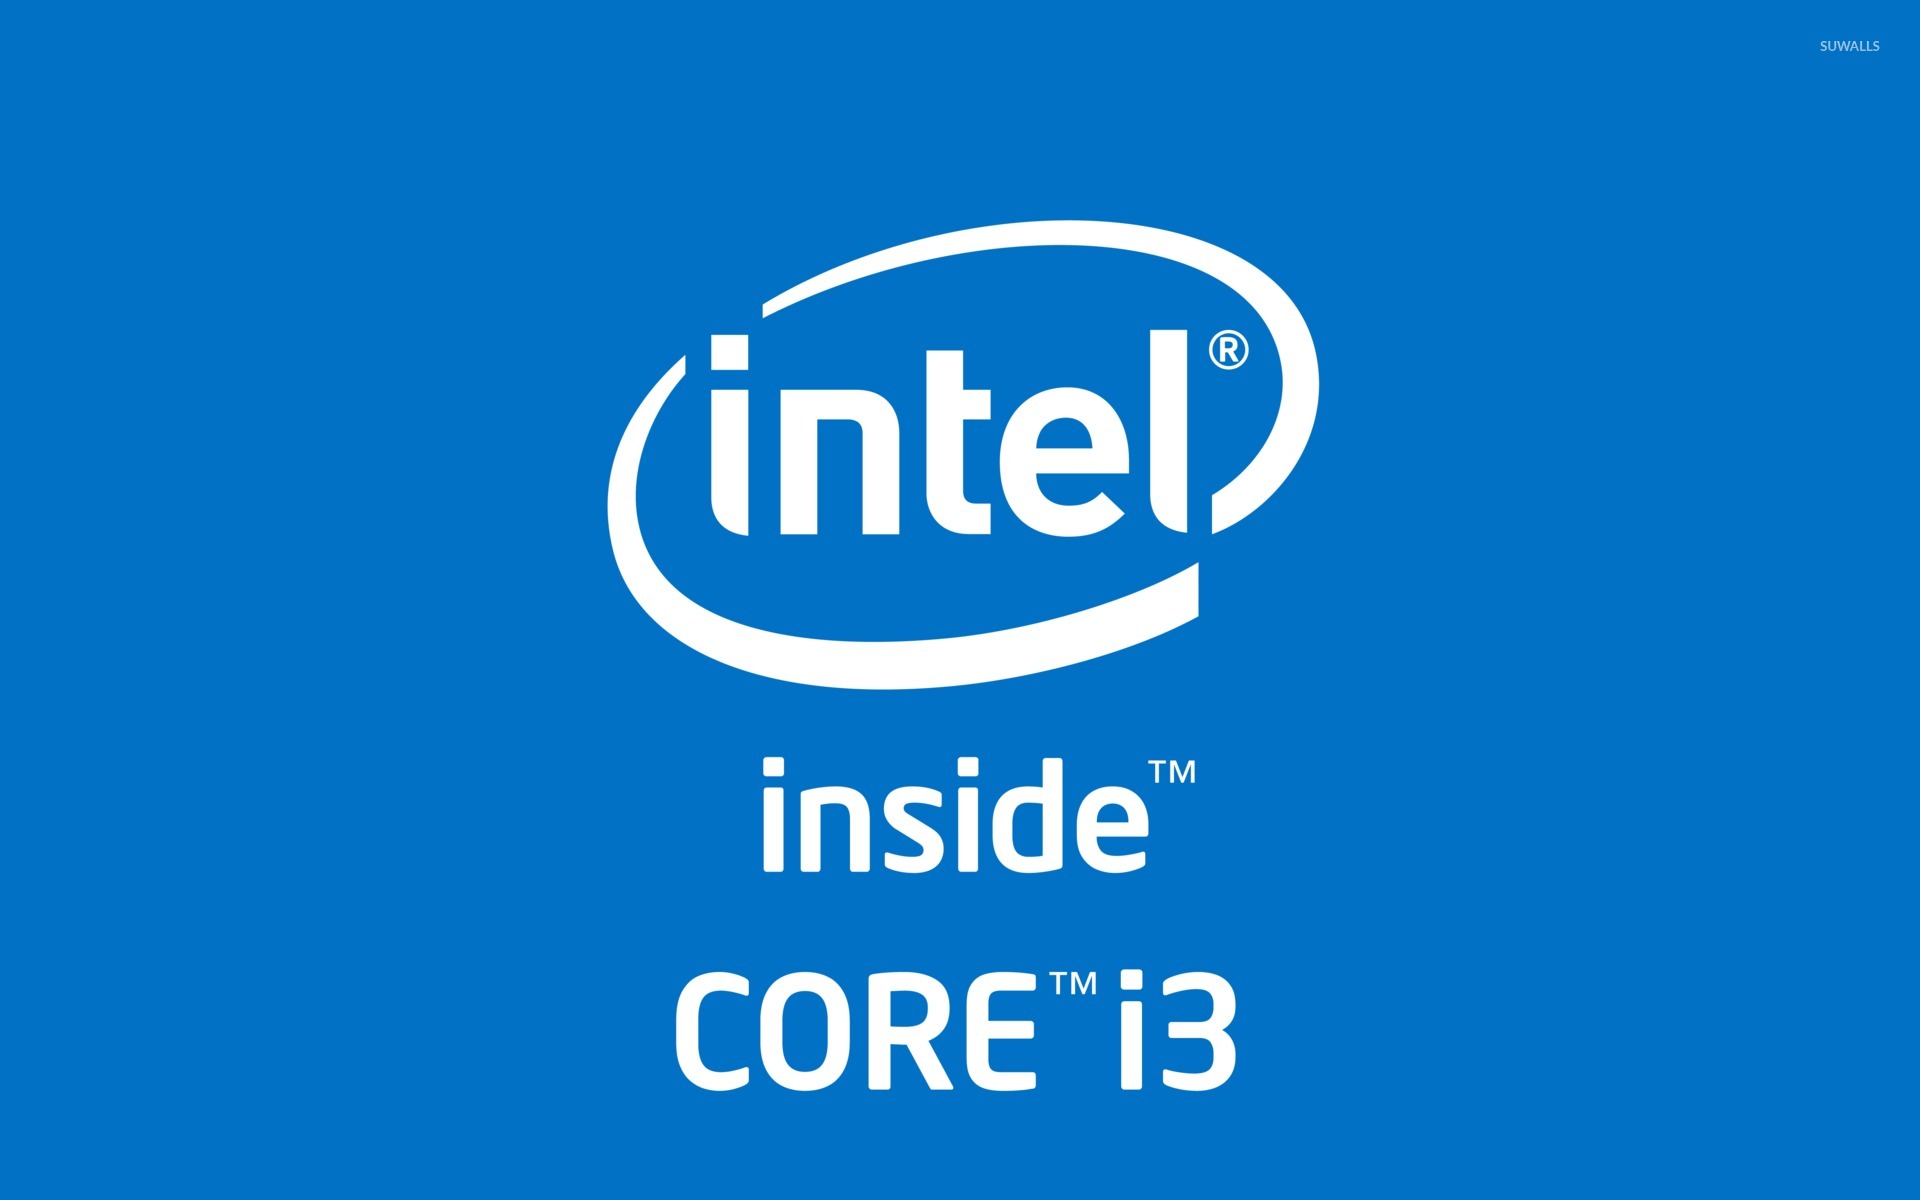 Intel com. Intel inside Core i7 logo. Интел i3 1920 1080. Intel Core i3. Intel Core i3 inside.